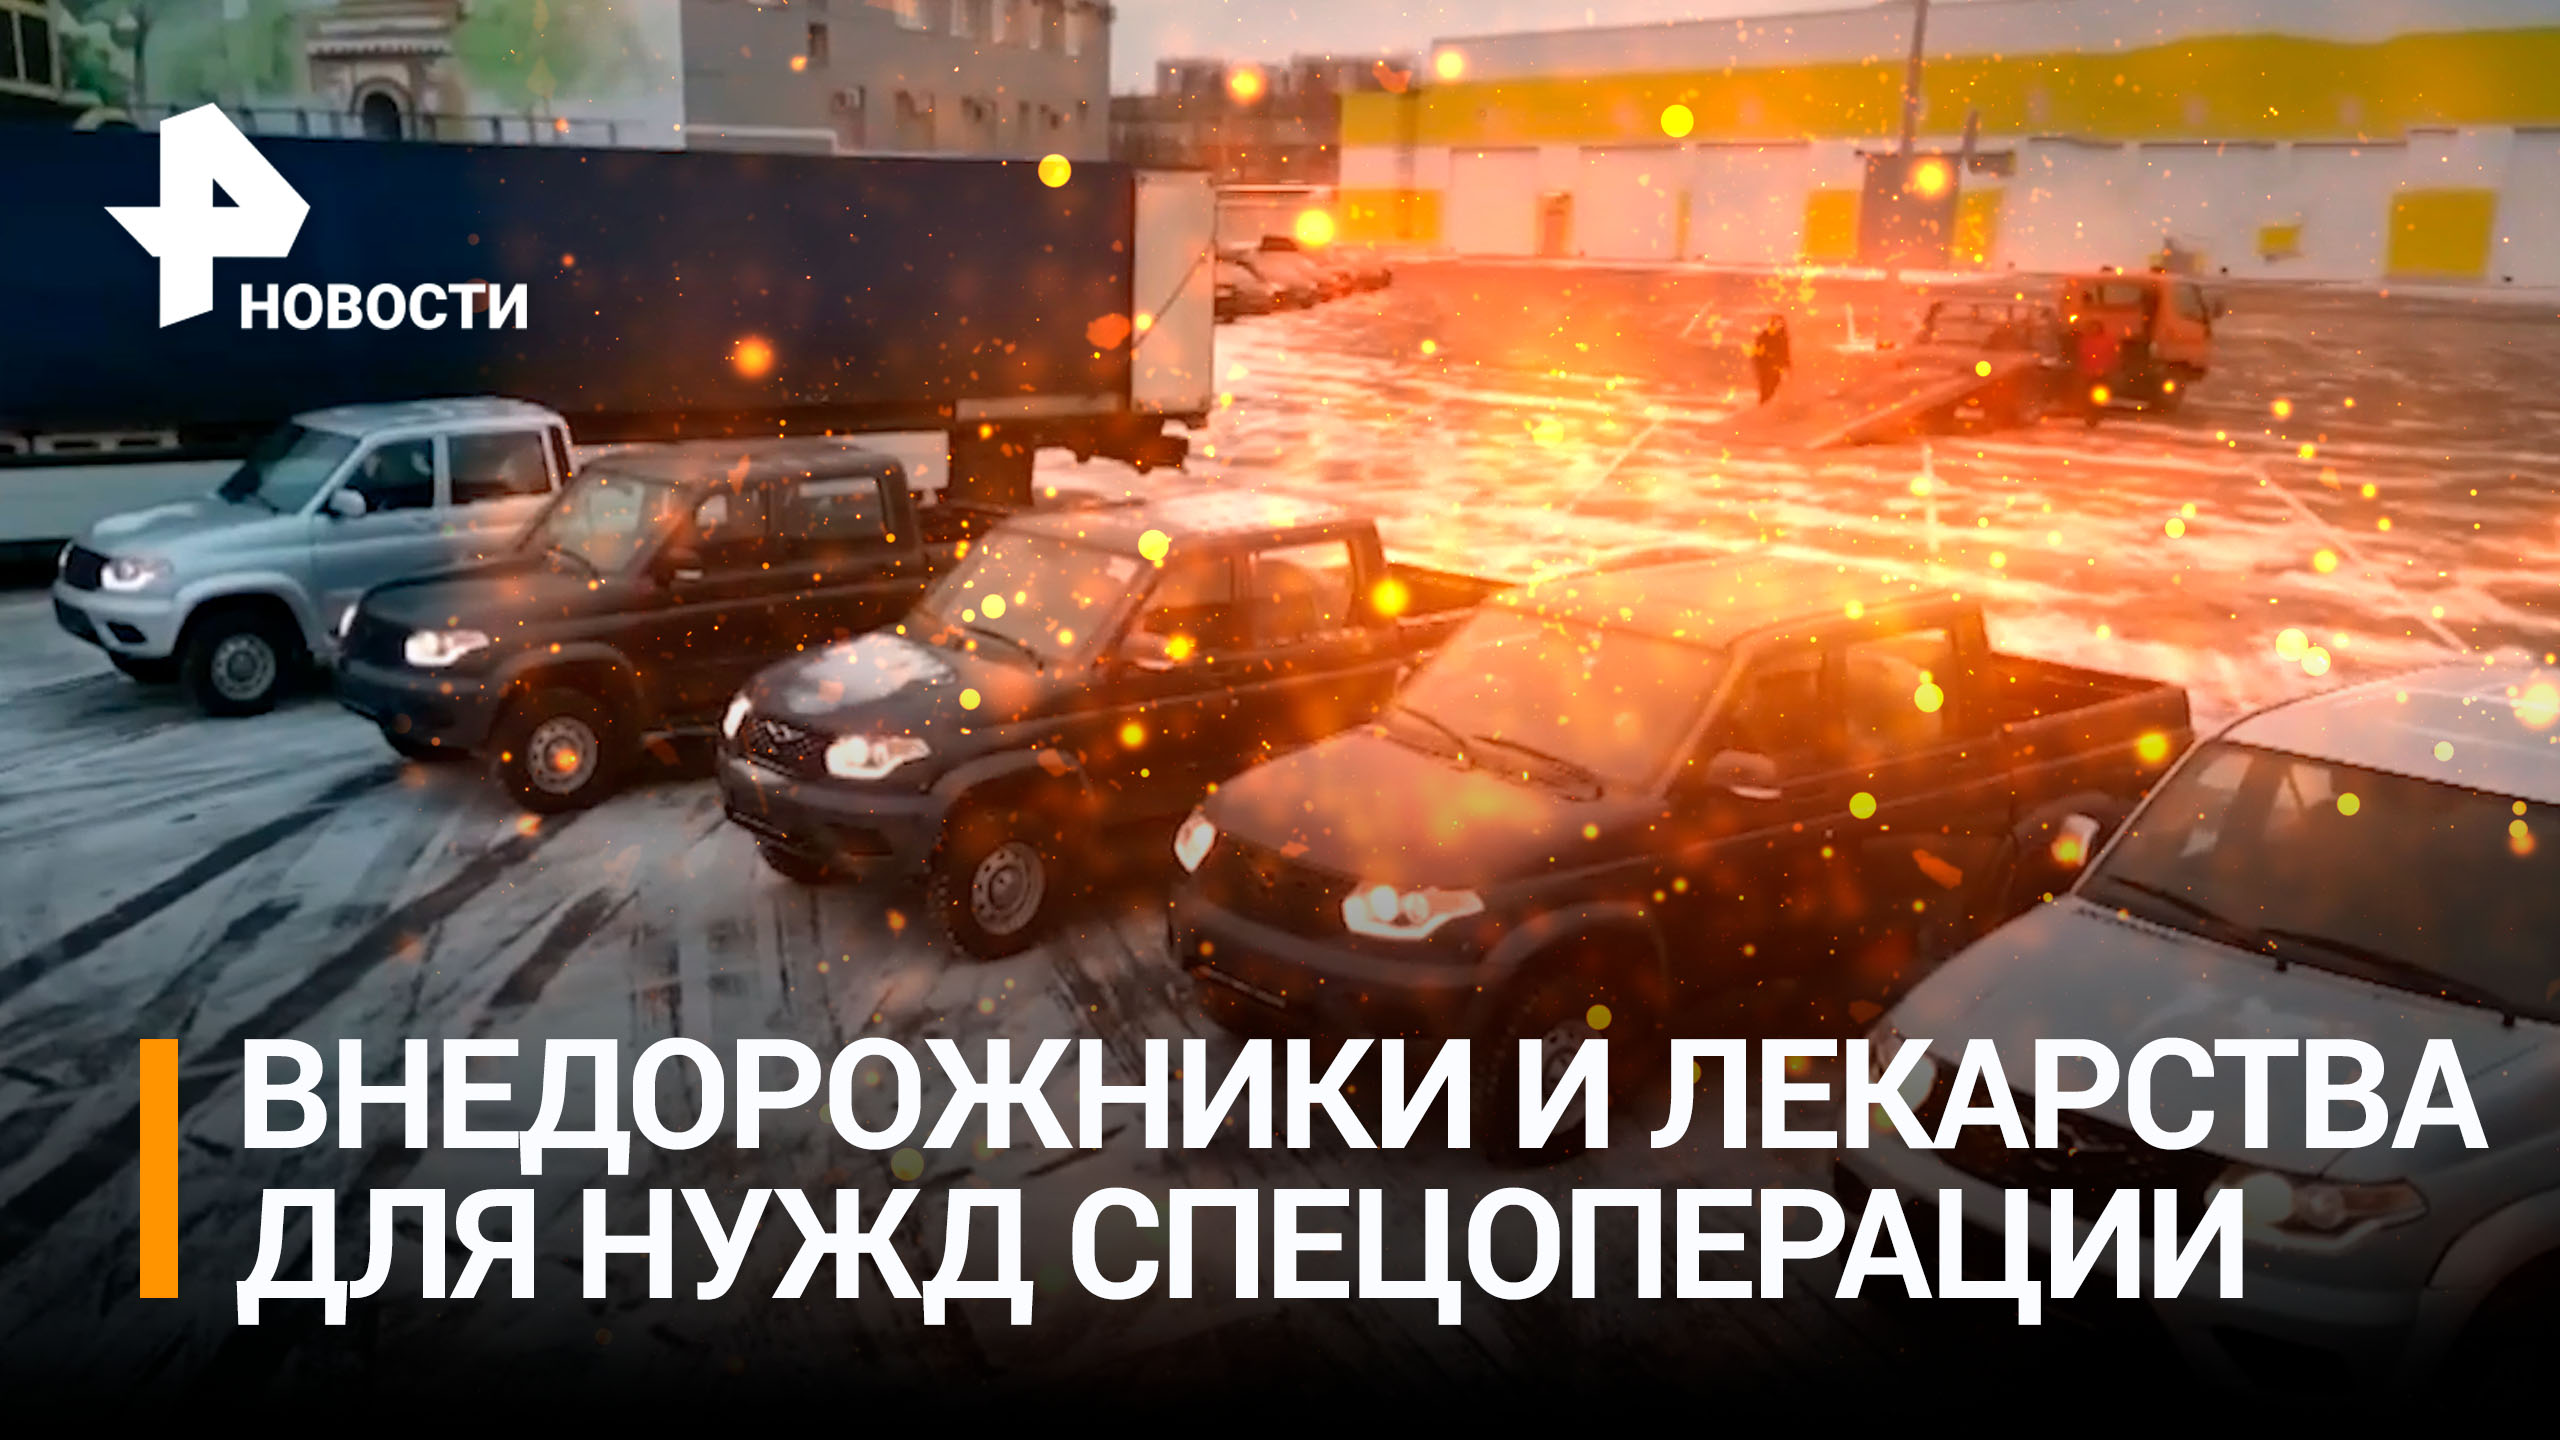 Внедорожники и лекарства: губернатор Беглов передал снаряжение батальону "Аврора" / РЕН Новости